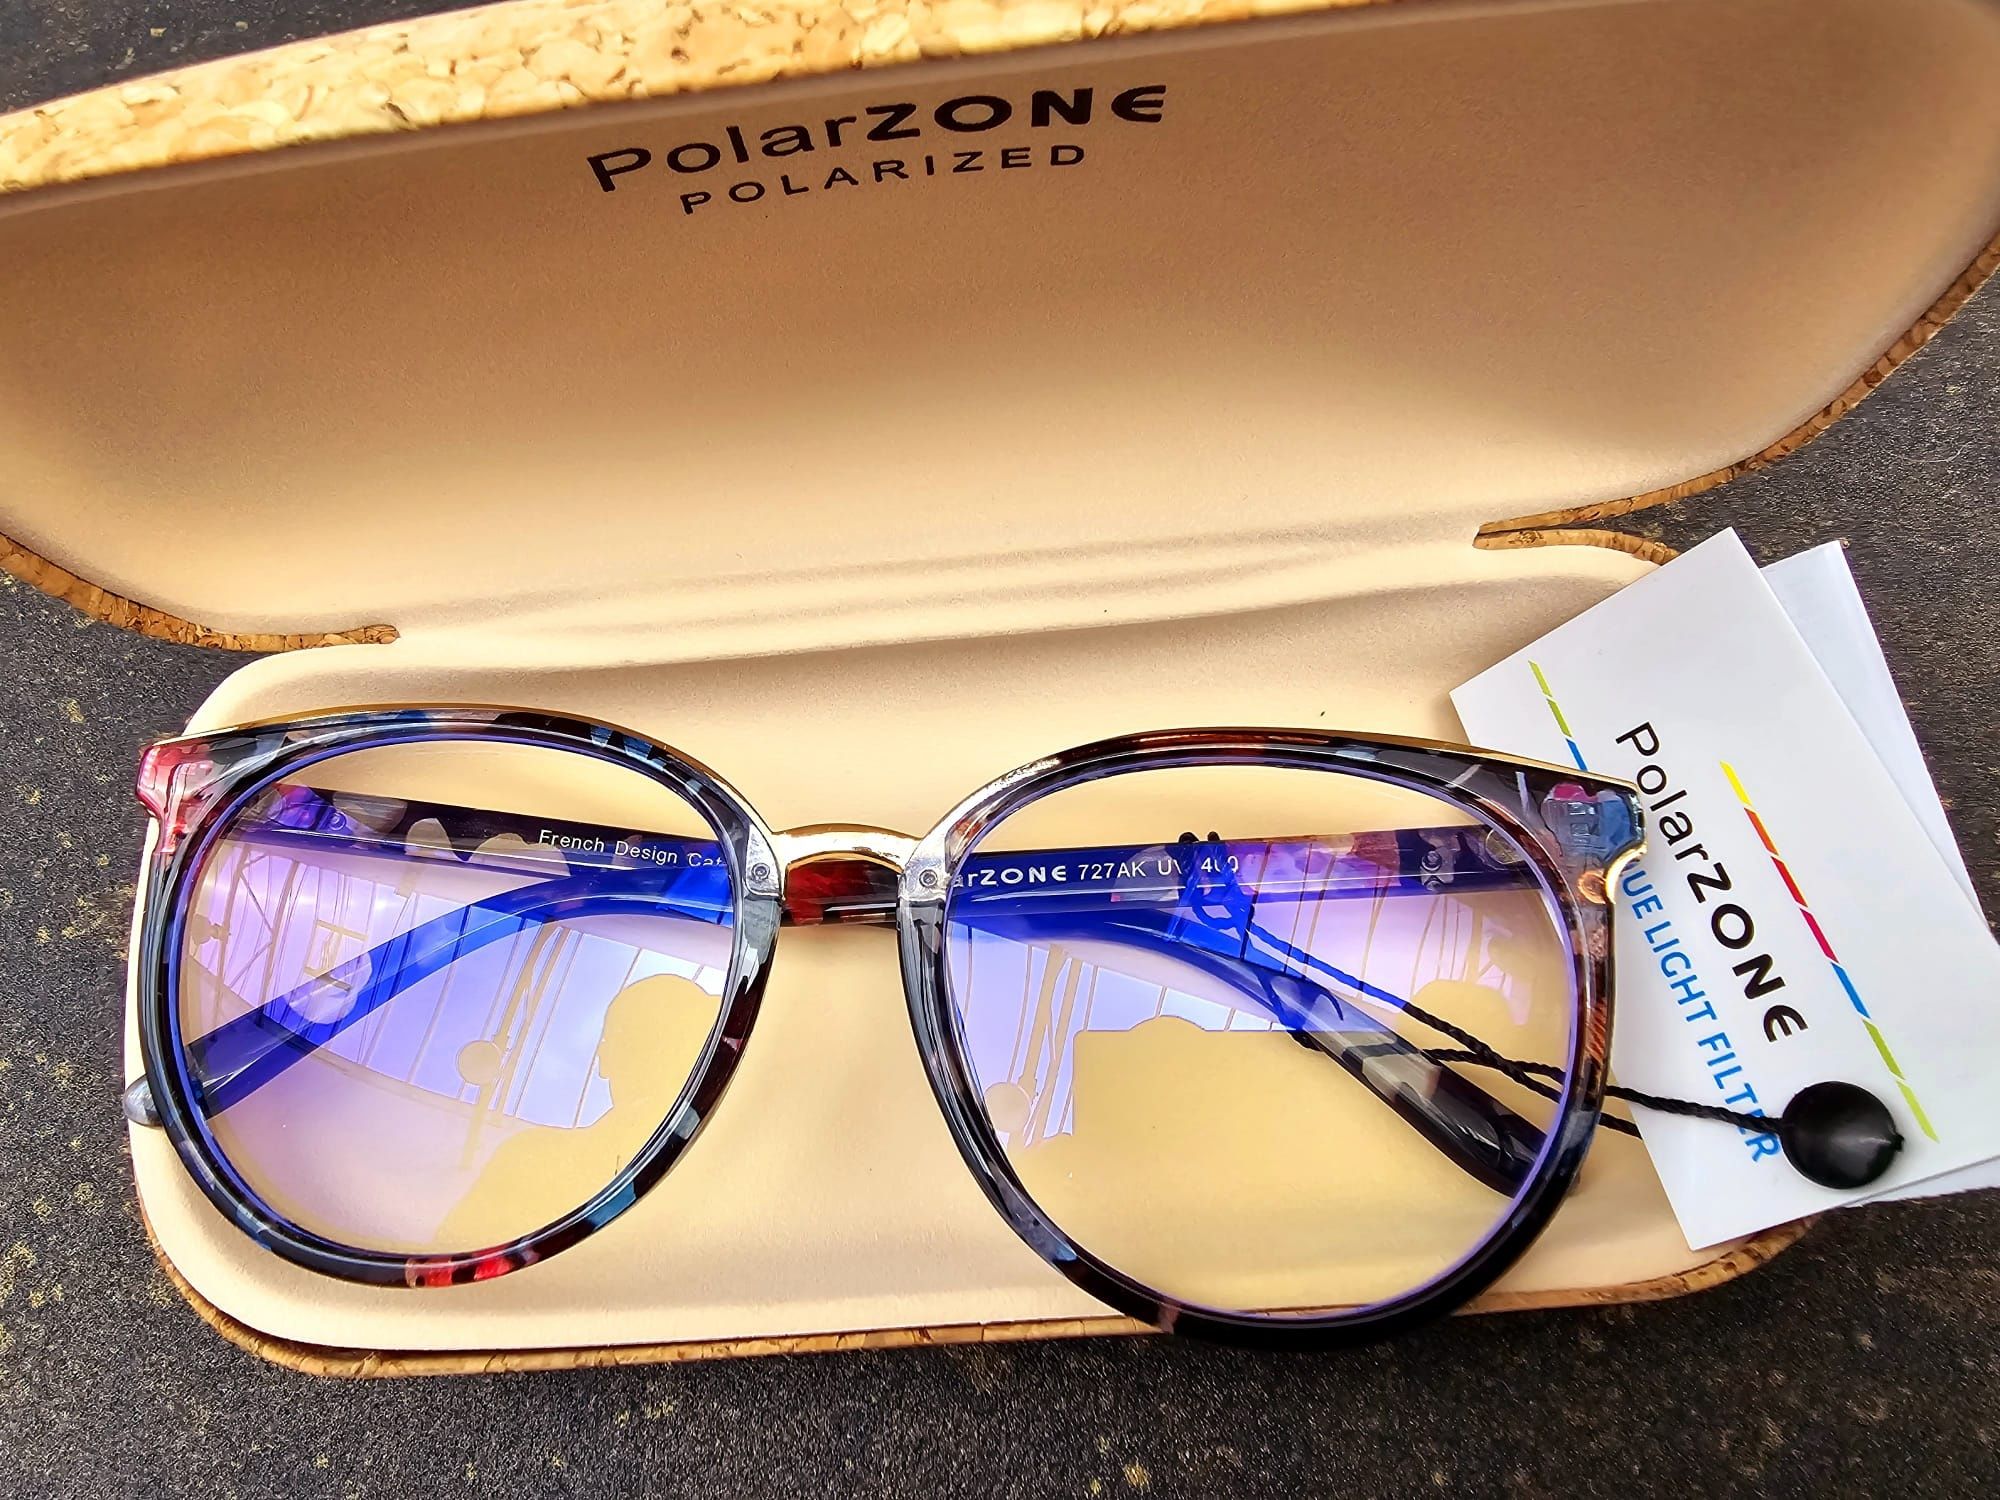 Polarzone okulary zerówki damskie nowe modne